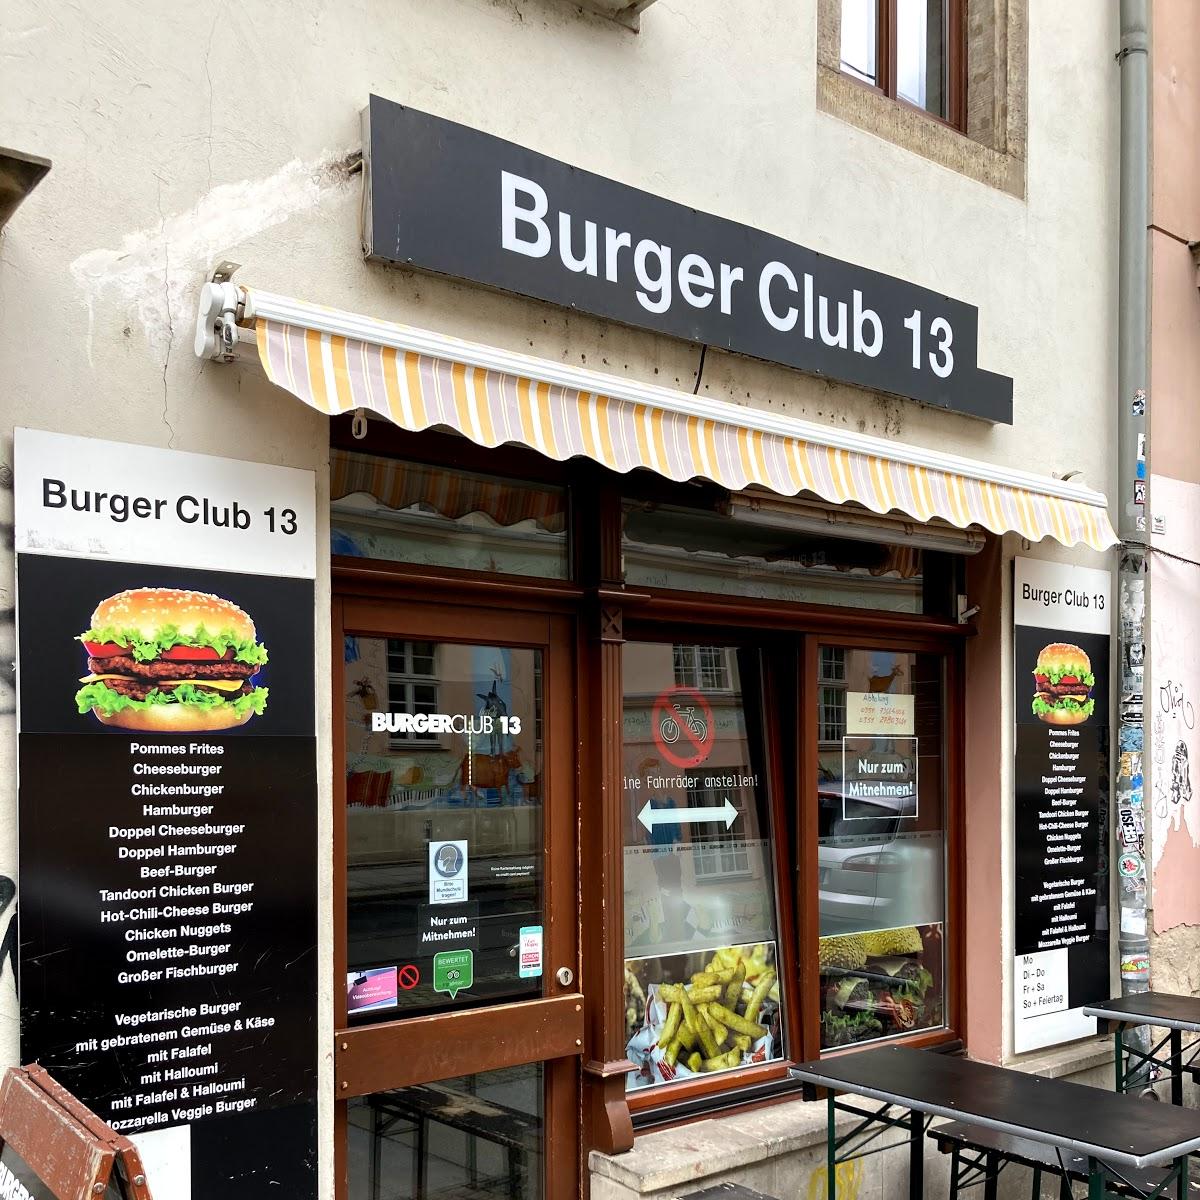 Restaurant "Burger Club 13" in Dresden